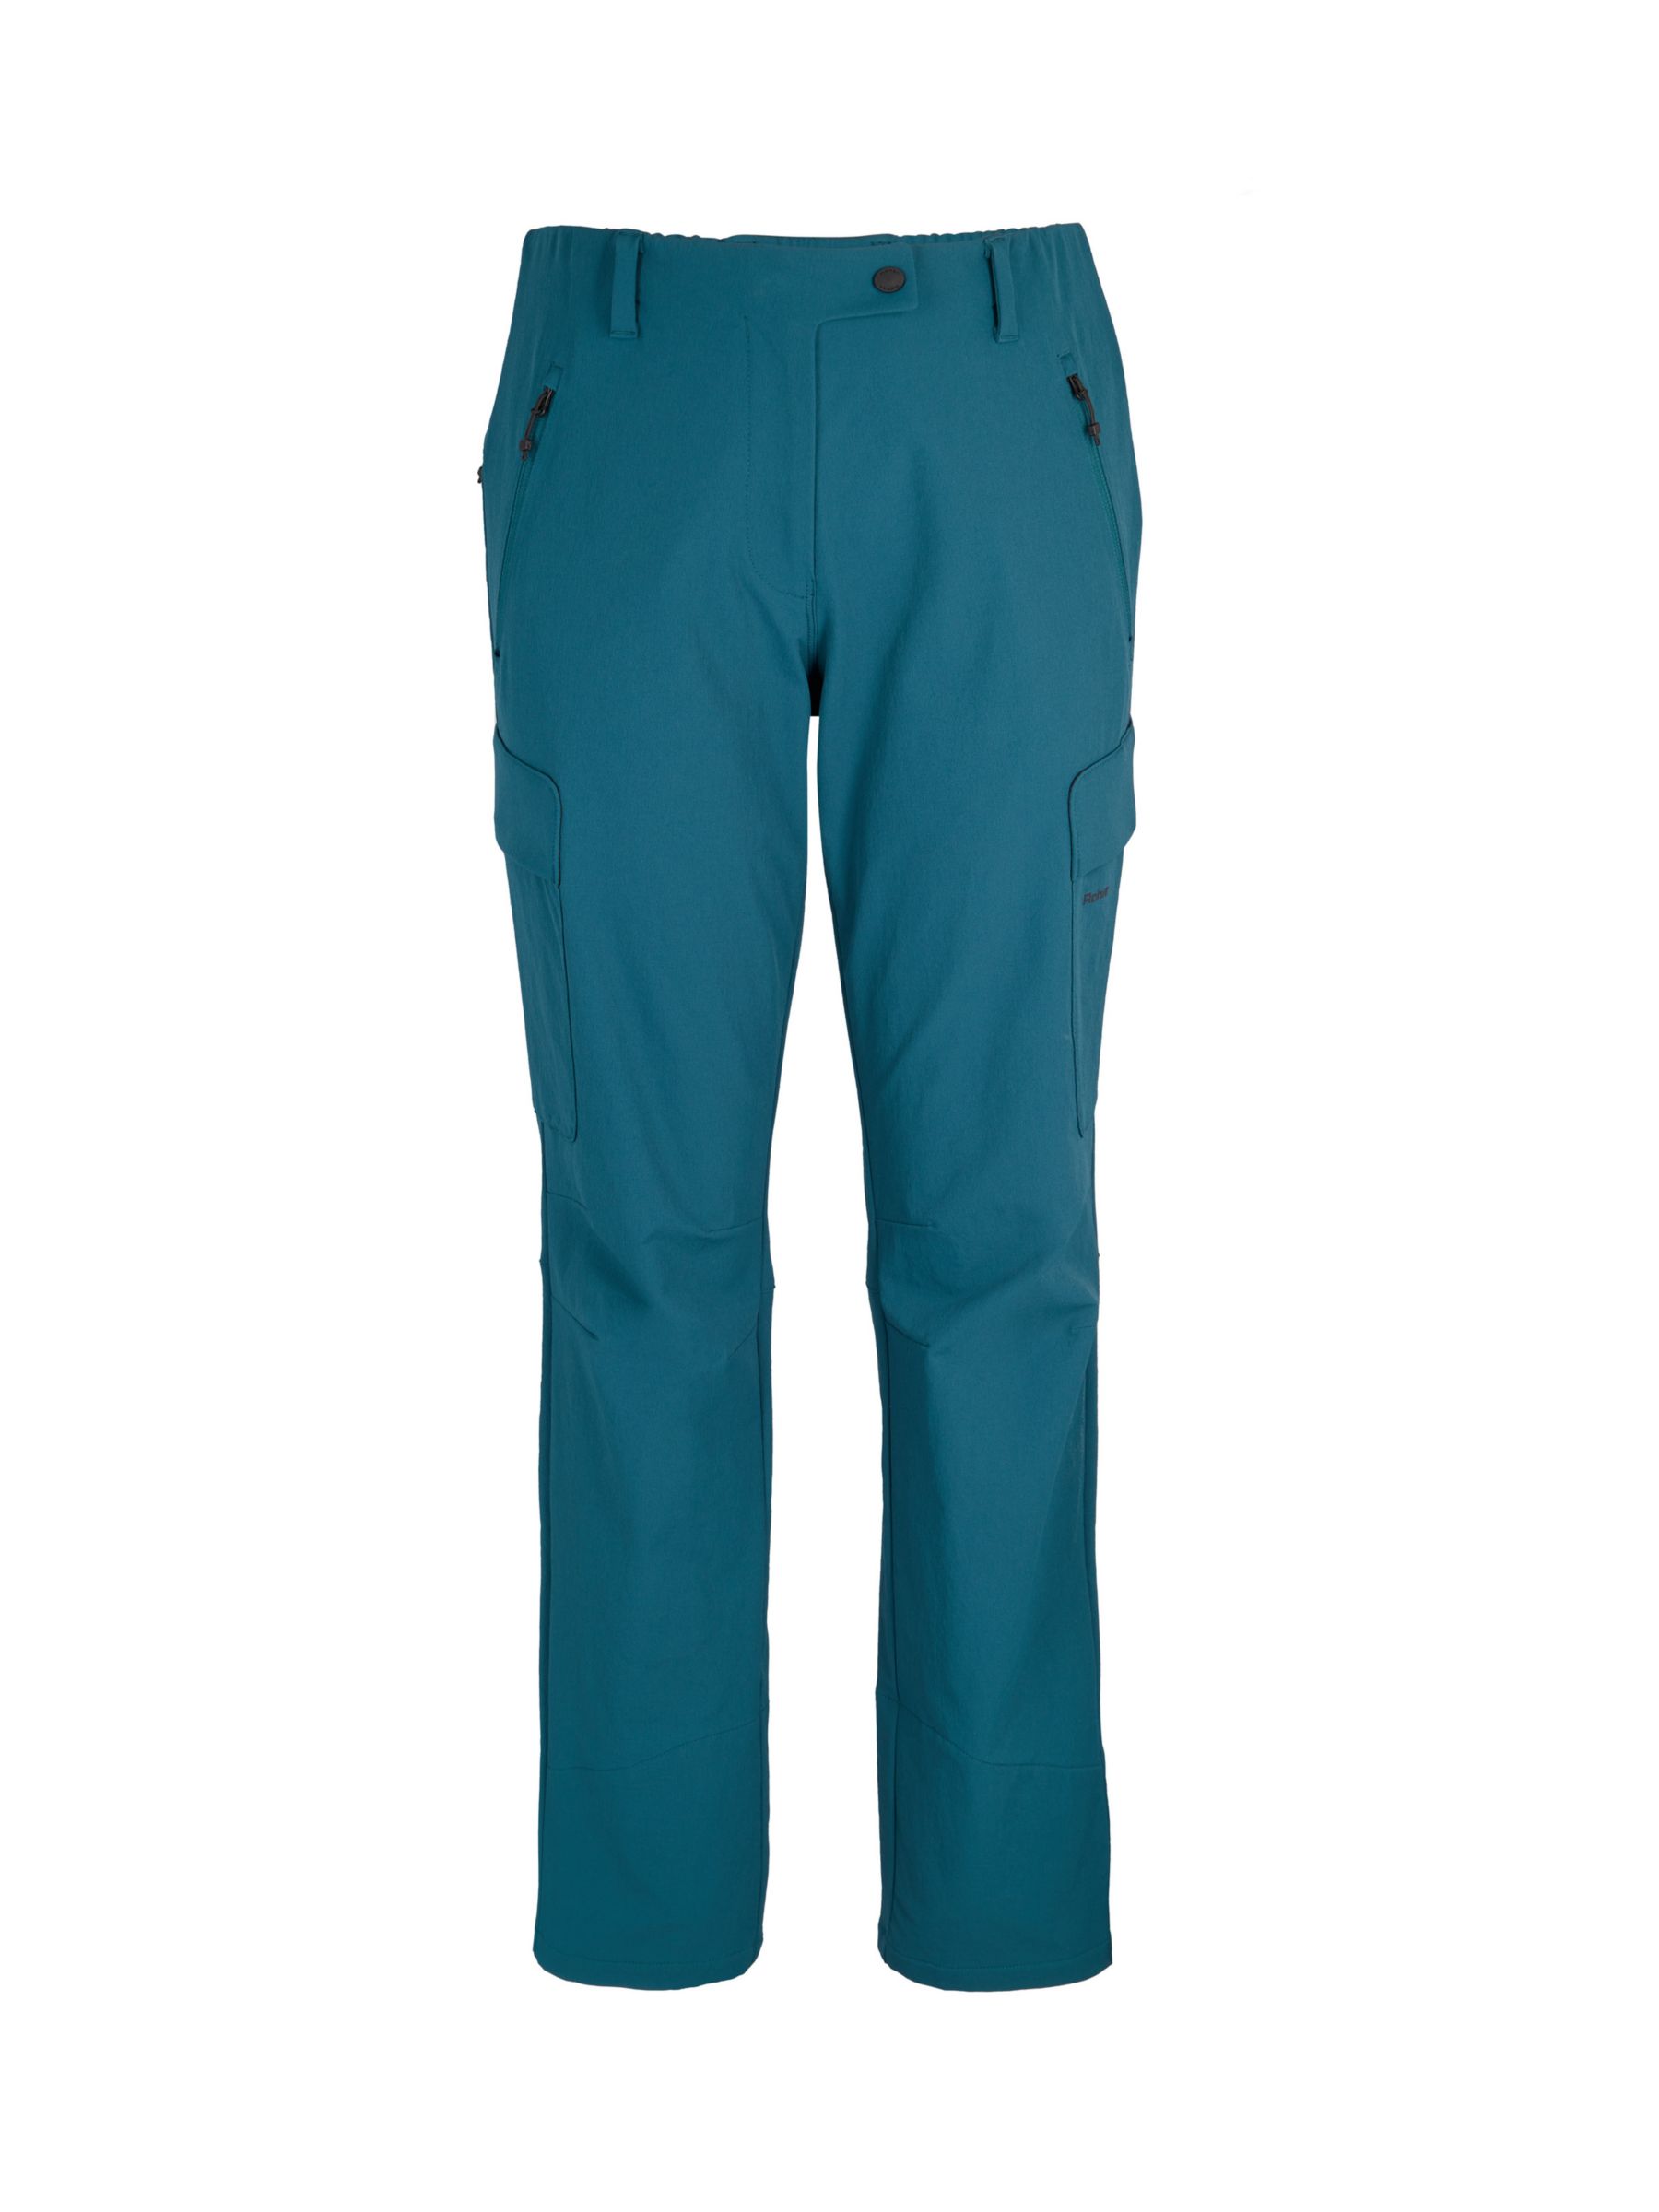 Rohan Glen Cargo Walking Trousers, Teal Blue, 8R